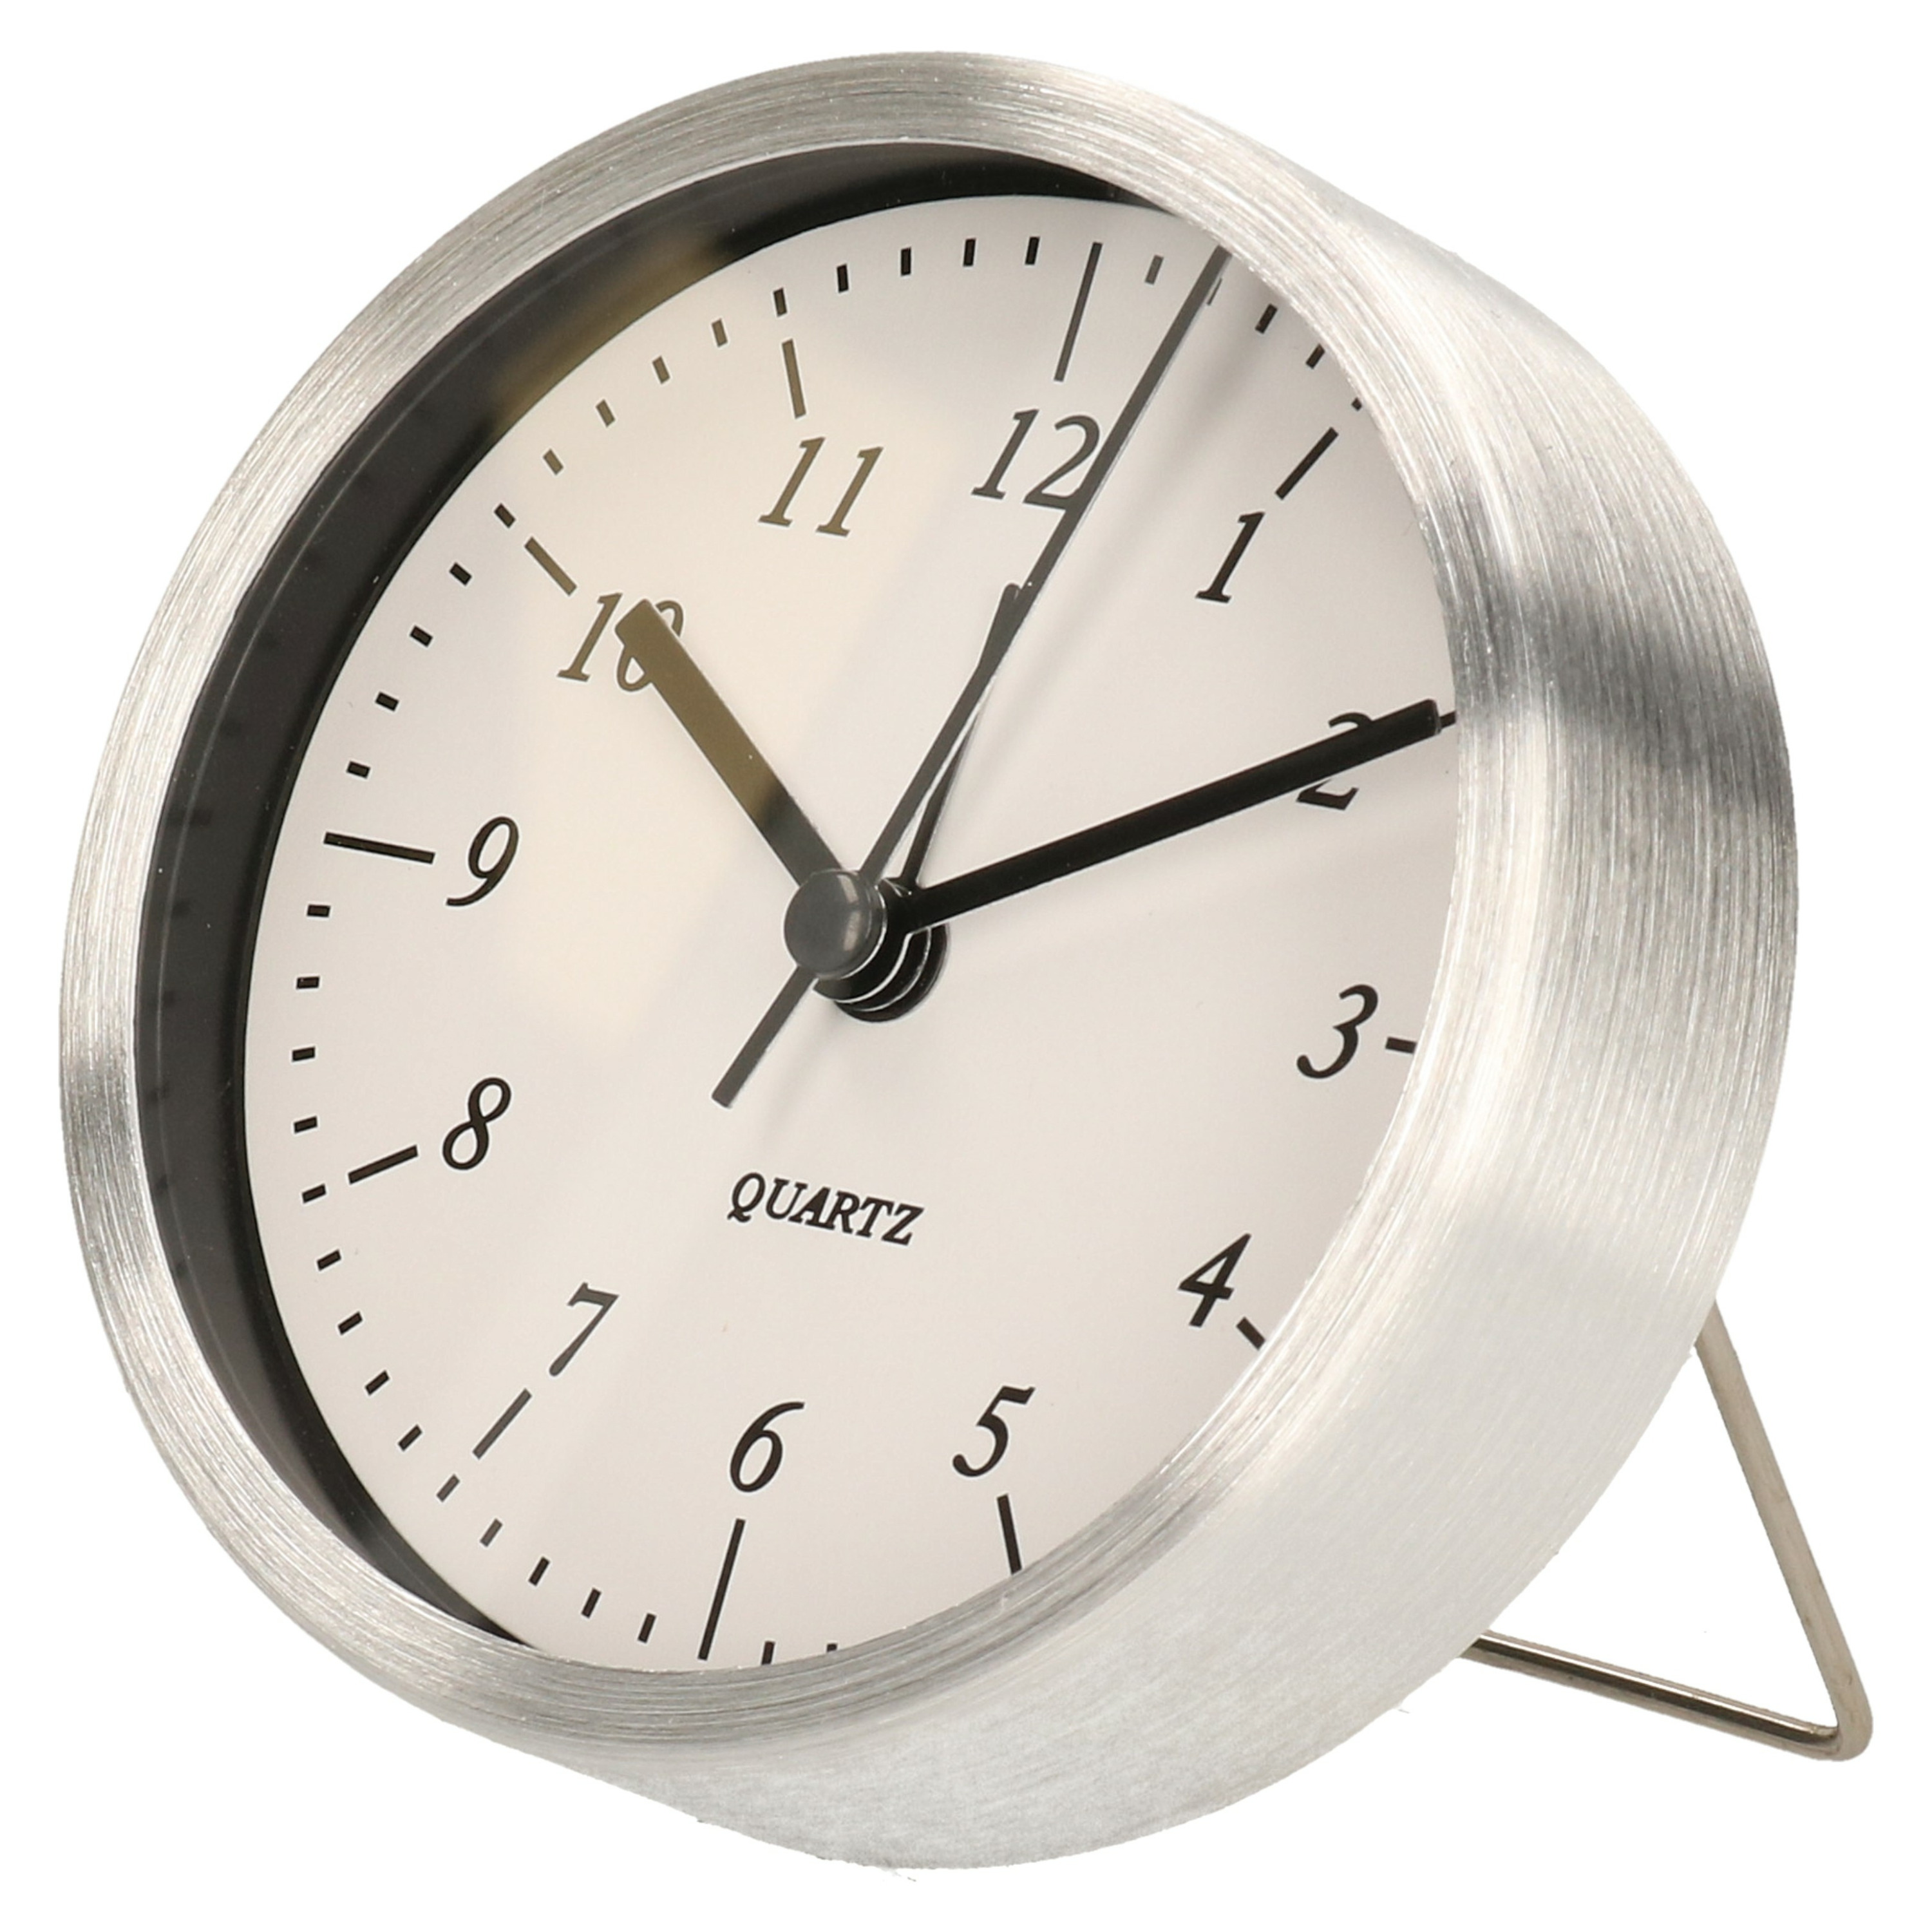 Gerimport Wekker-alarmklok analoog zilver-wit aluminium-glas 9 x 2,5 cm staand model